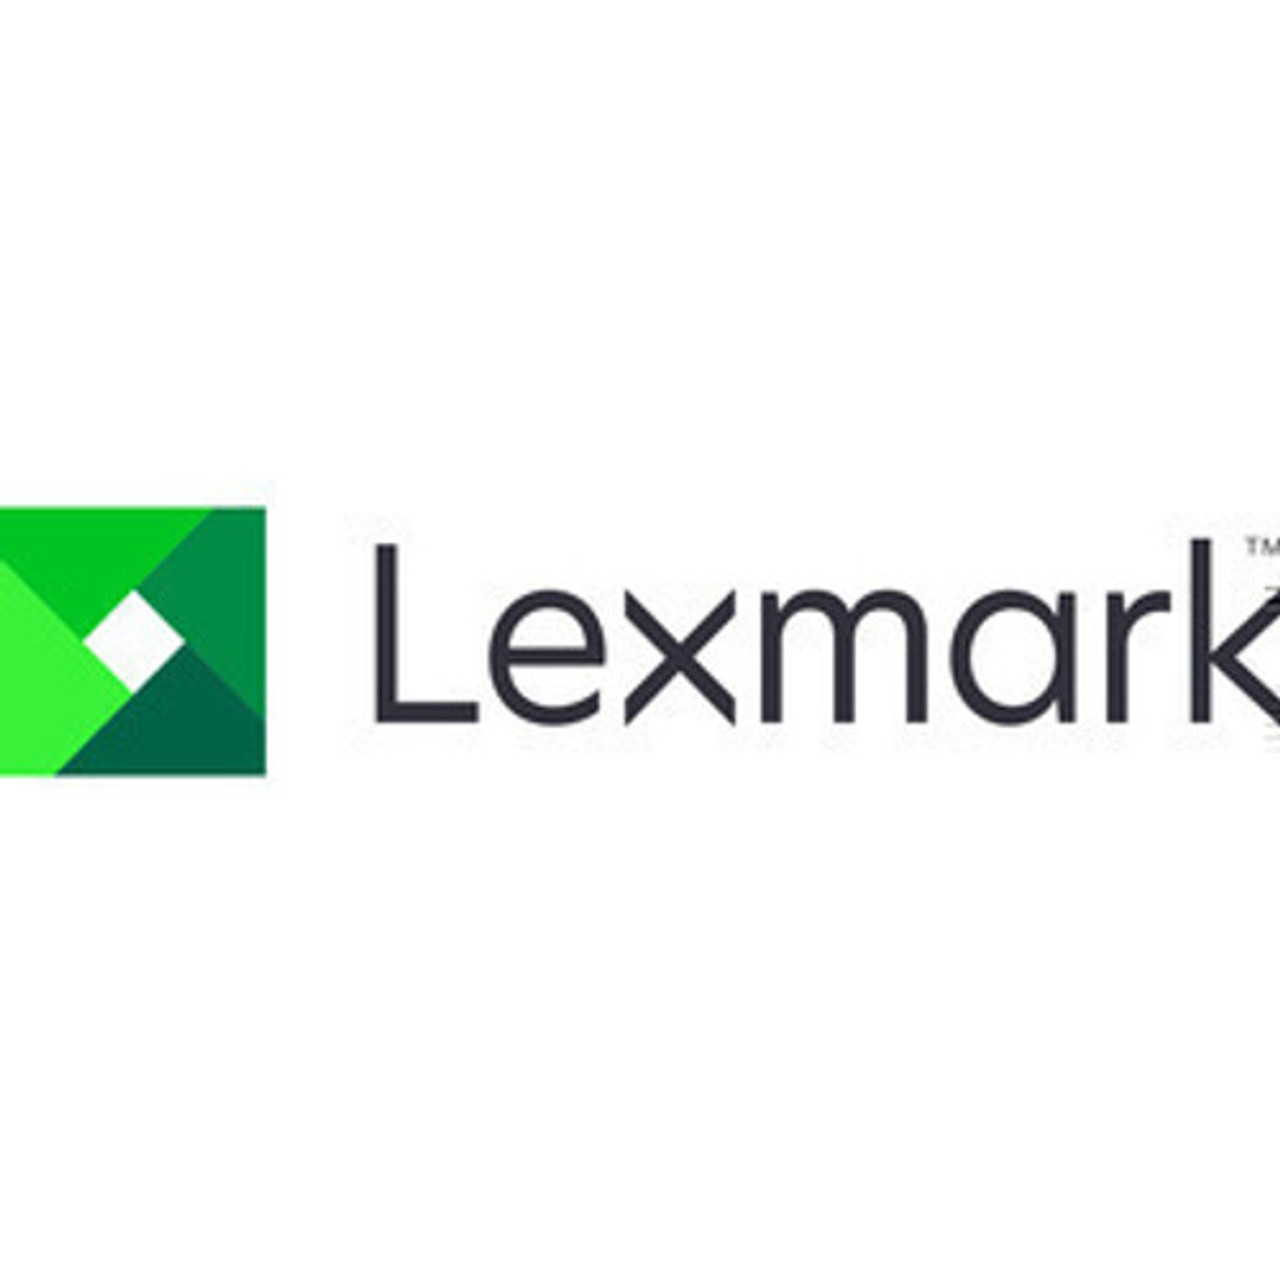 Lexmark LVPS/HVPS Card Assembly, 110V - 40X5842